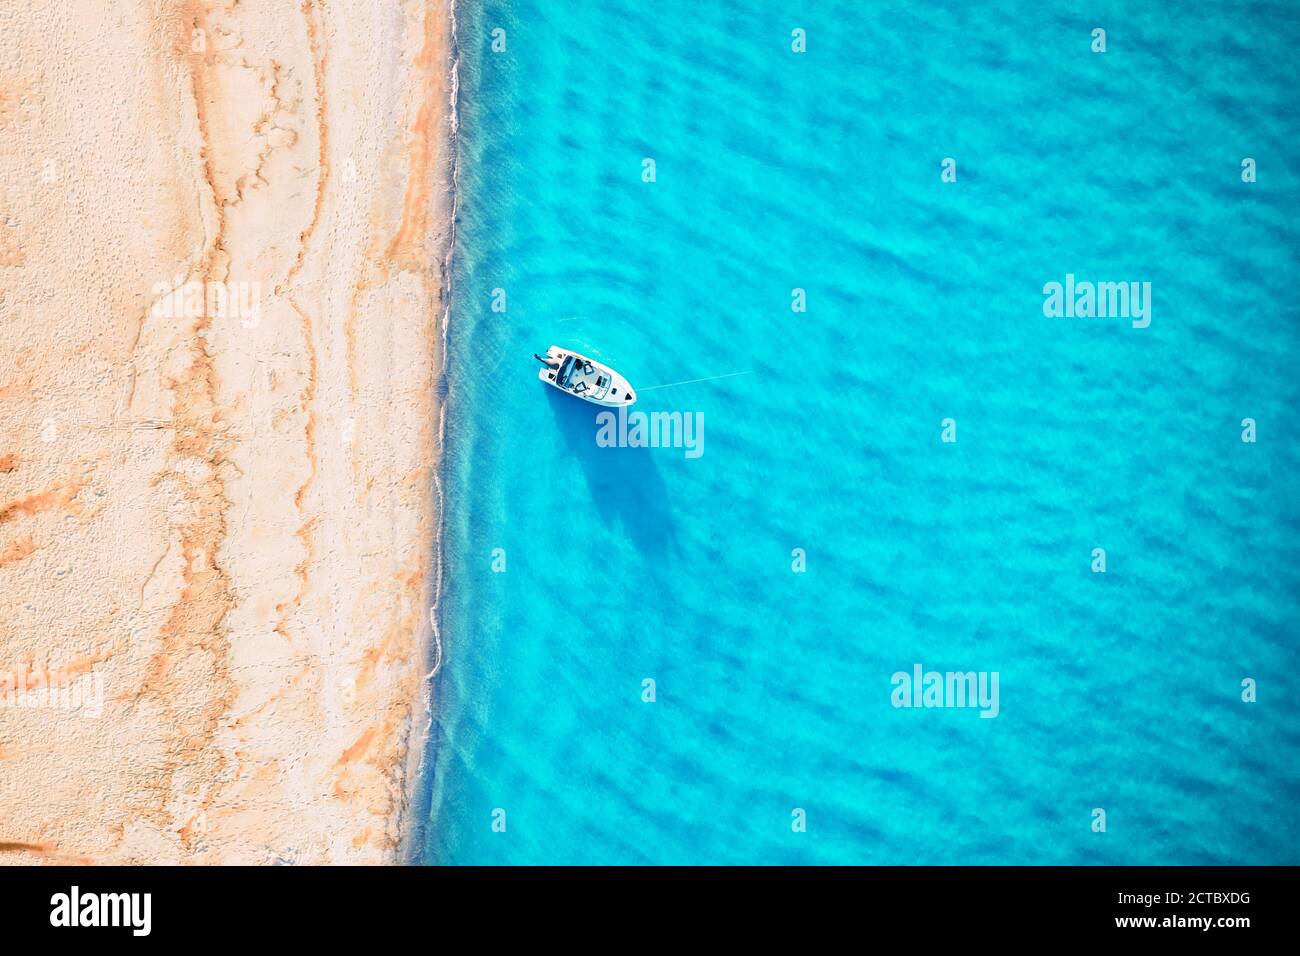 Yacht bianco e onde turchesi dall'alto. Spiaggia con sabbia gialla illuminata dalla luce del sole. Viaggi estate vacanze stagcape sfondo da drone Foto Stock